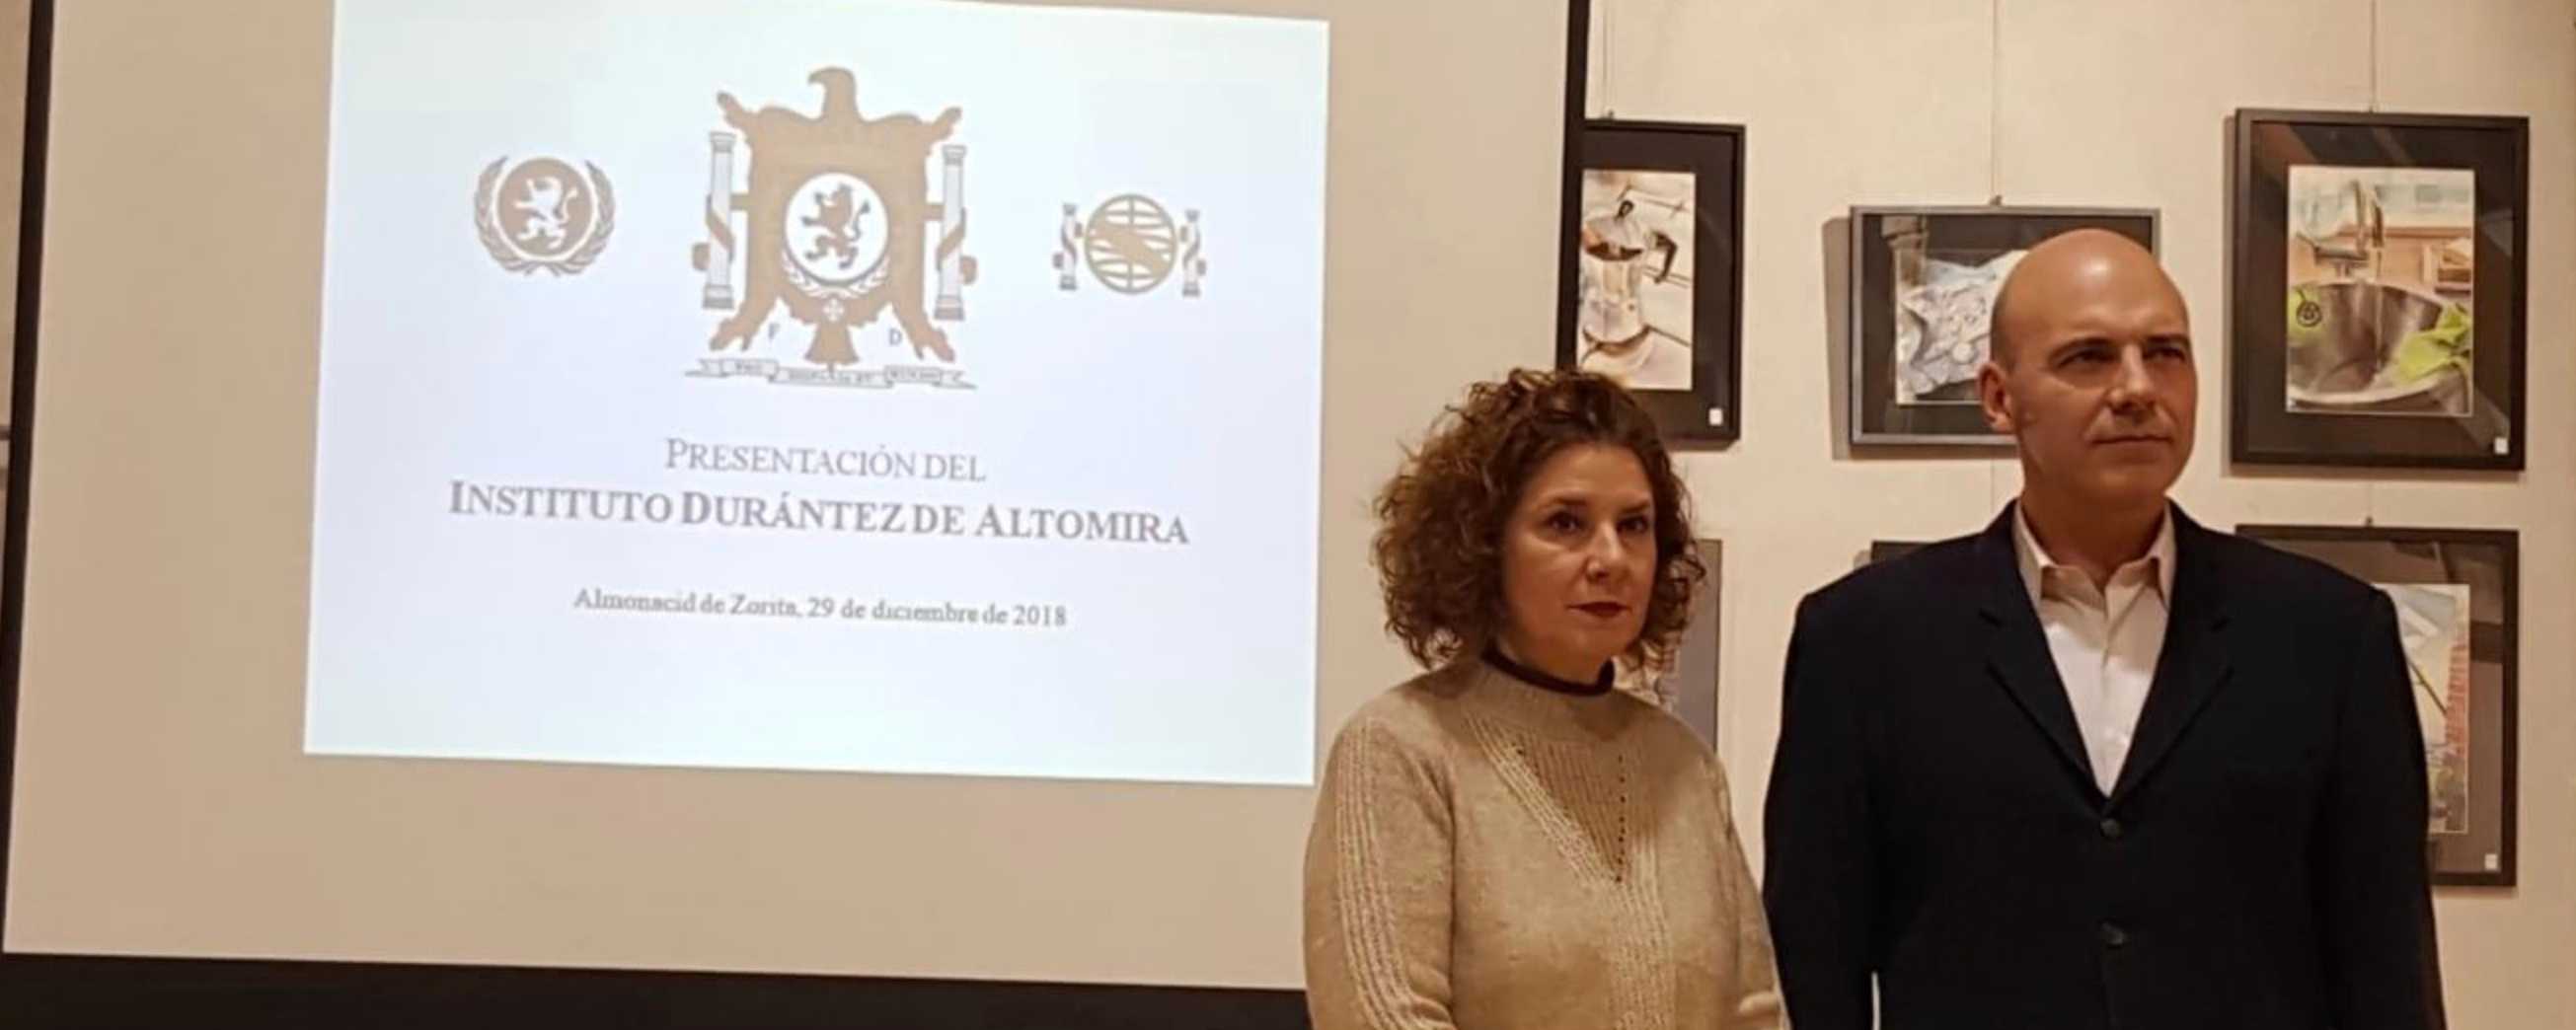 Presentación del Instituto Durántez de Altomira 